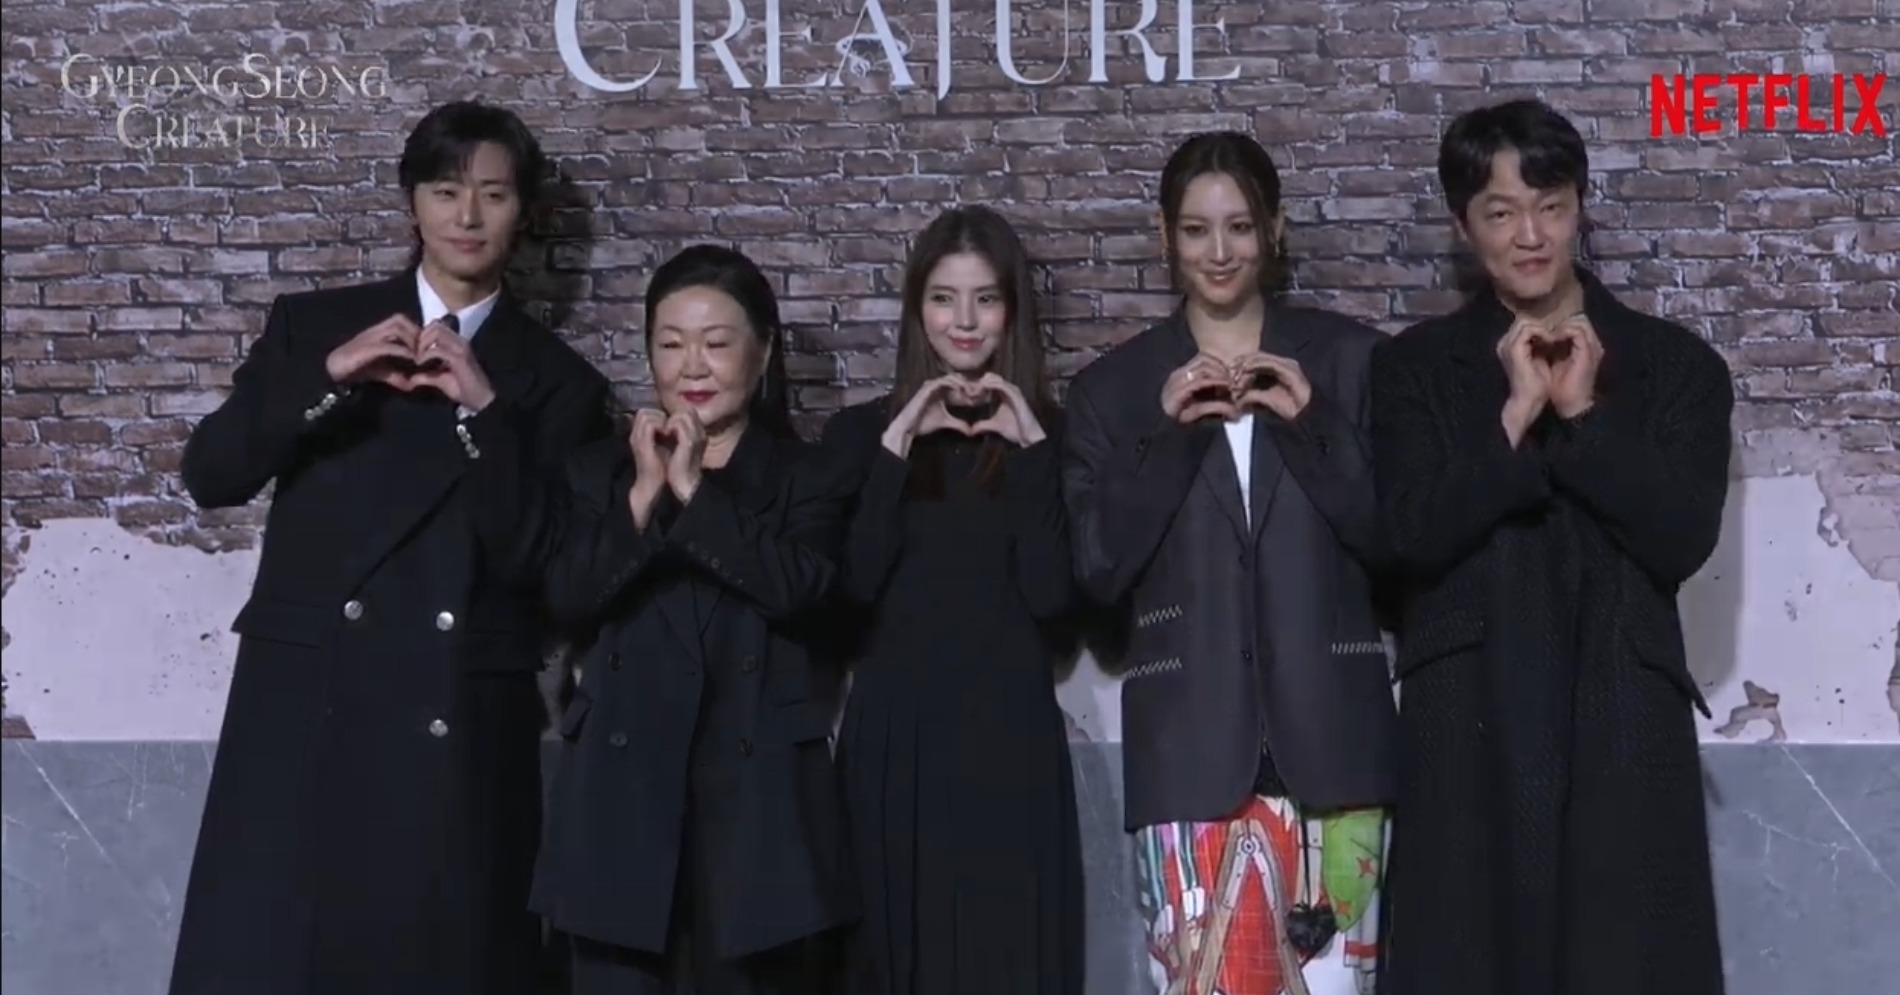 Cast Gyeongseong Creature. (Sumber gambar : Tangkapan layar YouTube Netflix)